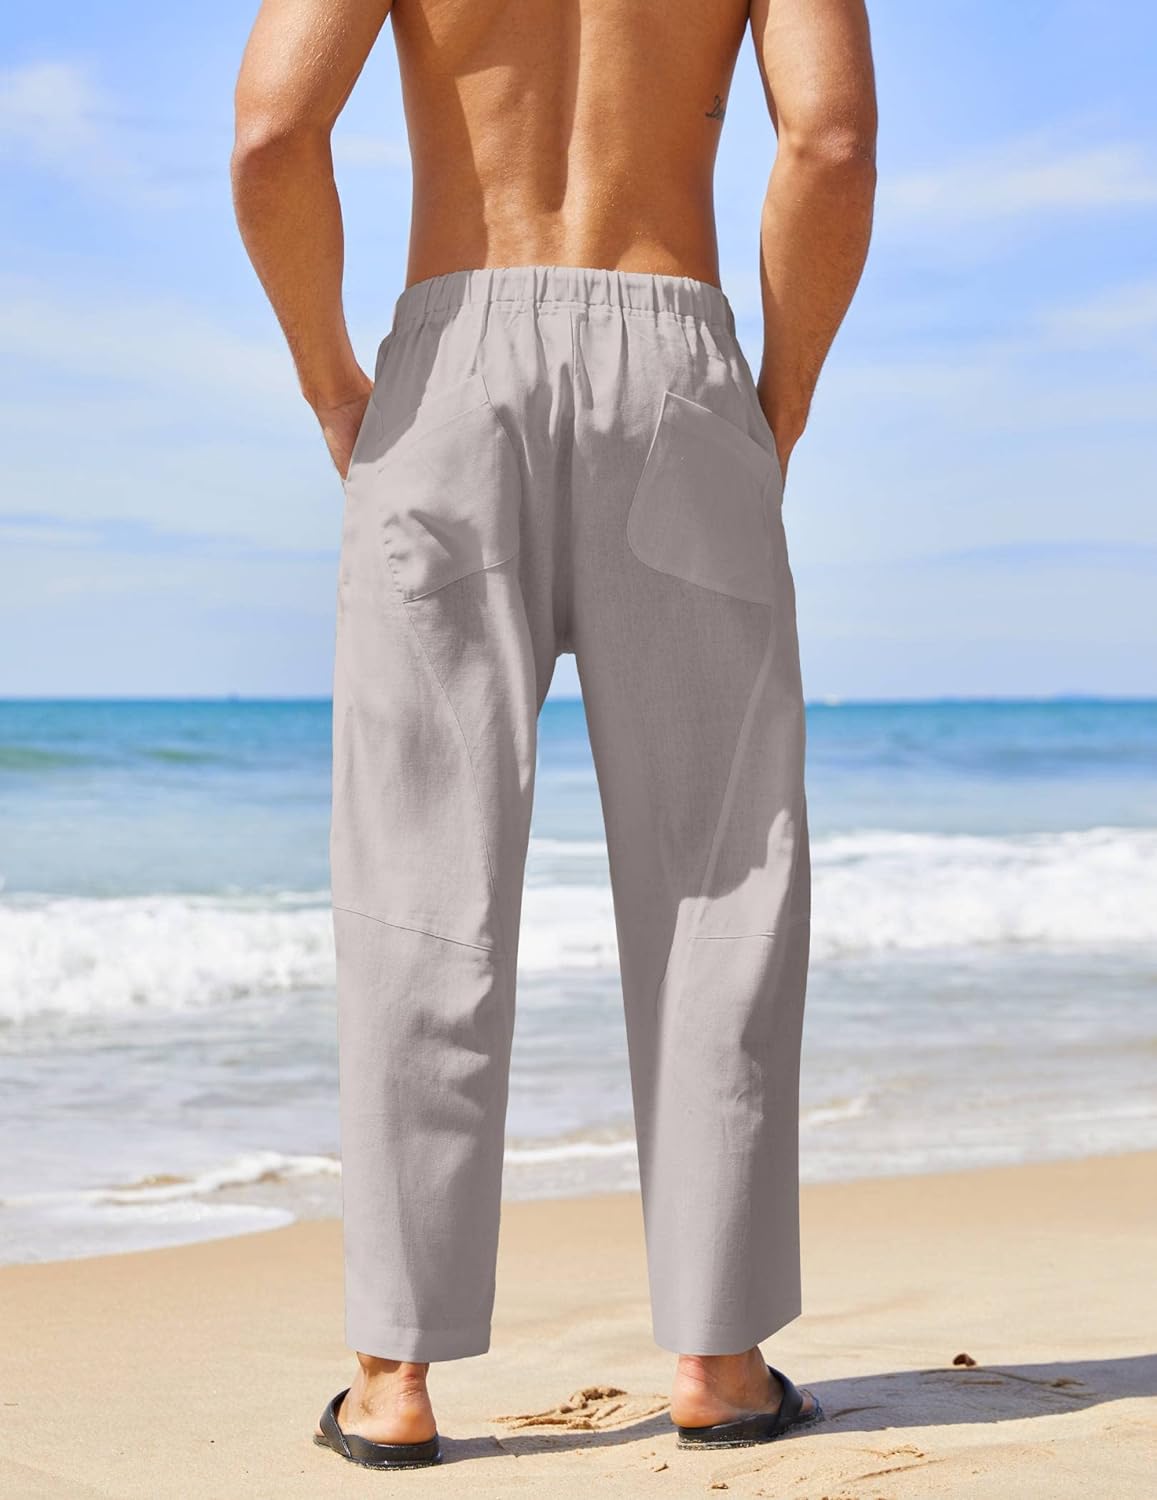 كوفاندي سروال رجالي كاجوال فضفاض خفيف الوزن بخصر مطاطي لليوجا والشاطئ